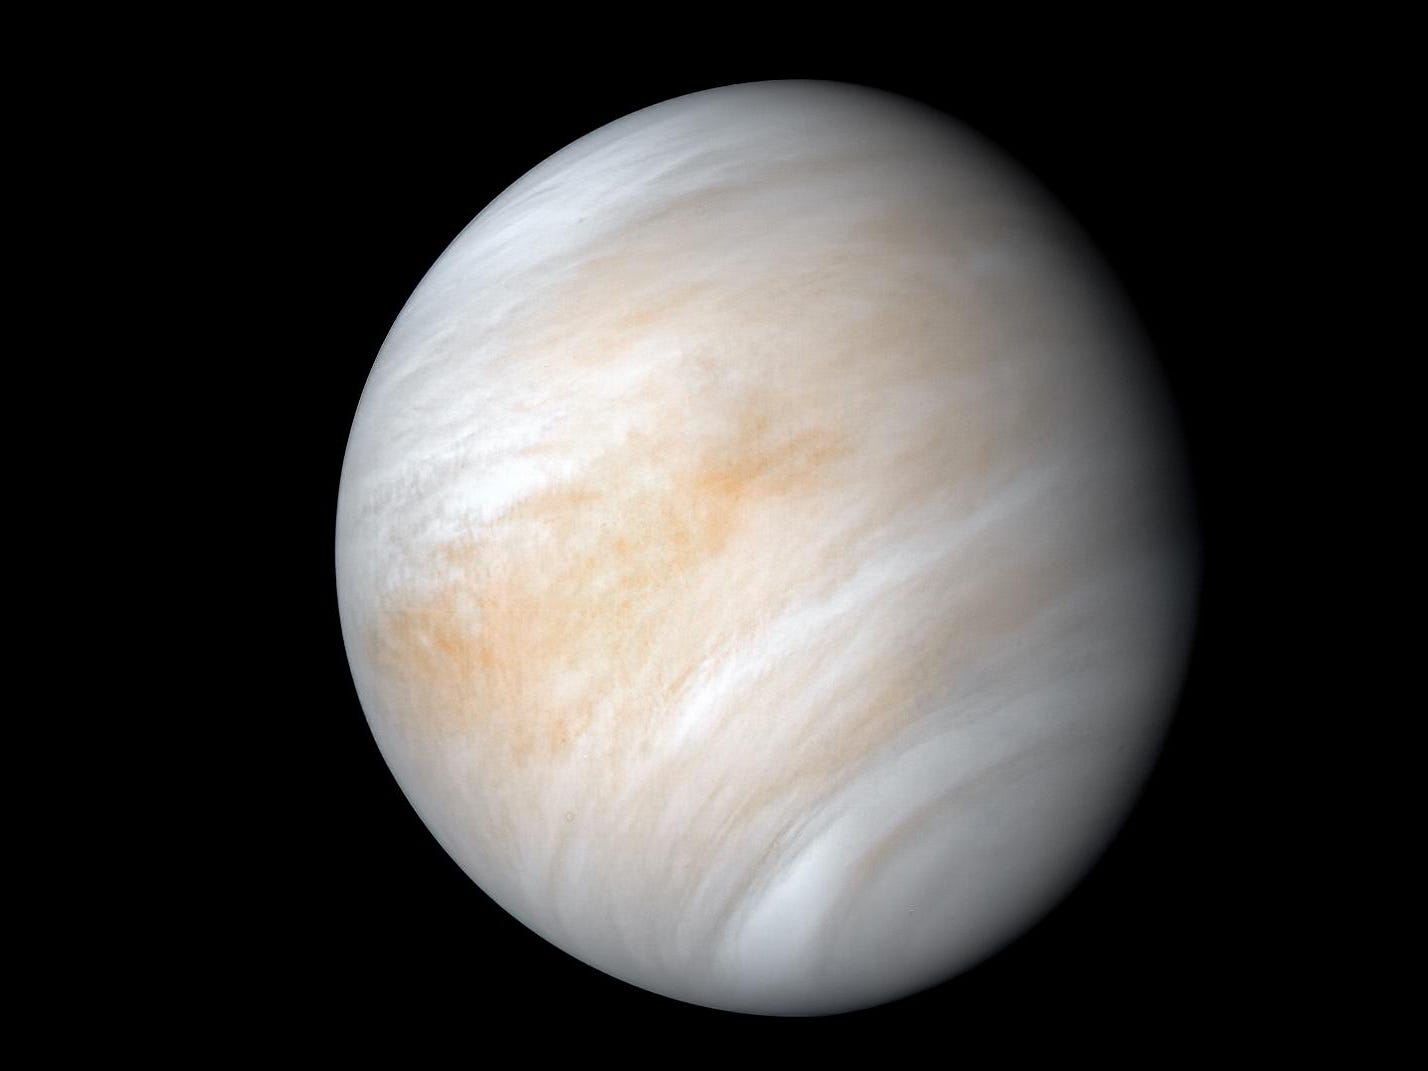 Venus Venuswolken Atmosphäre Phosphin Mariner 10. Februar 1974 NASA JPL Kevin M Gill